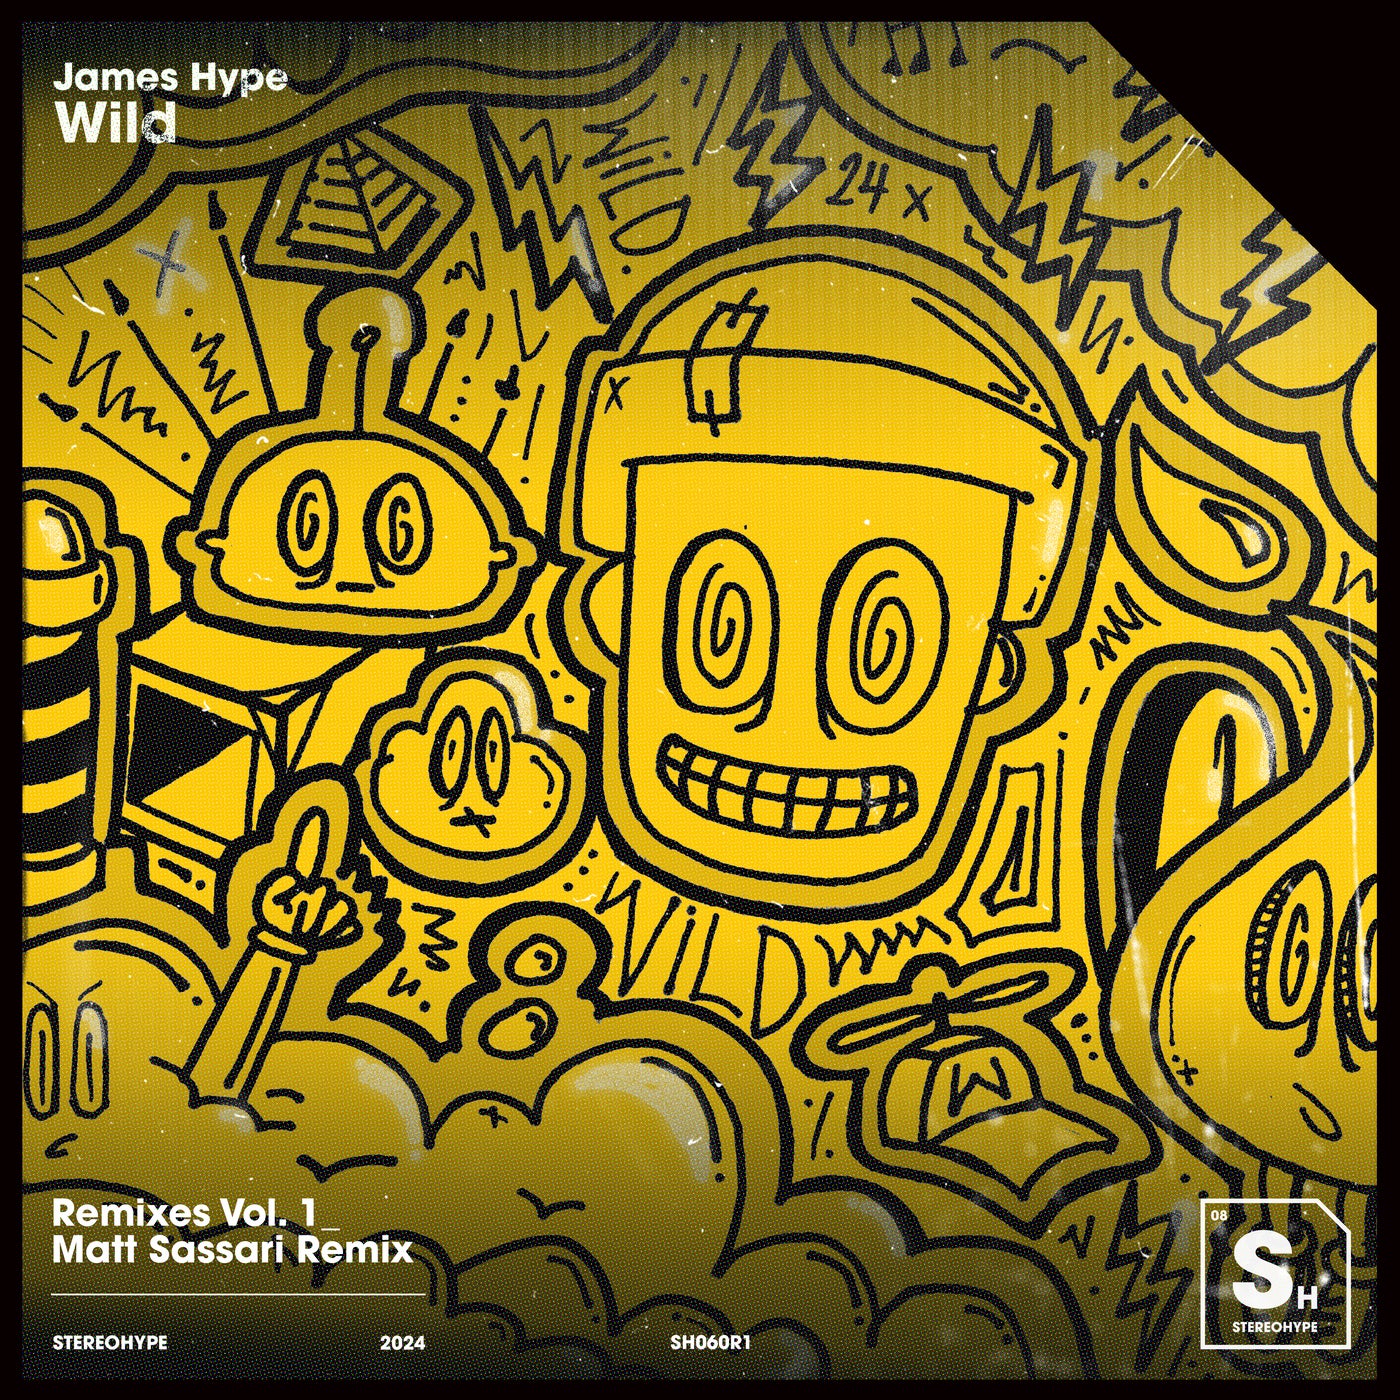 Wild (Matt Sassari Extended Remix)